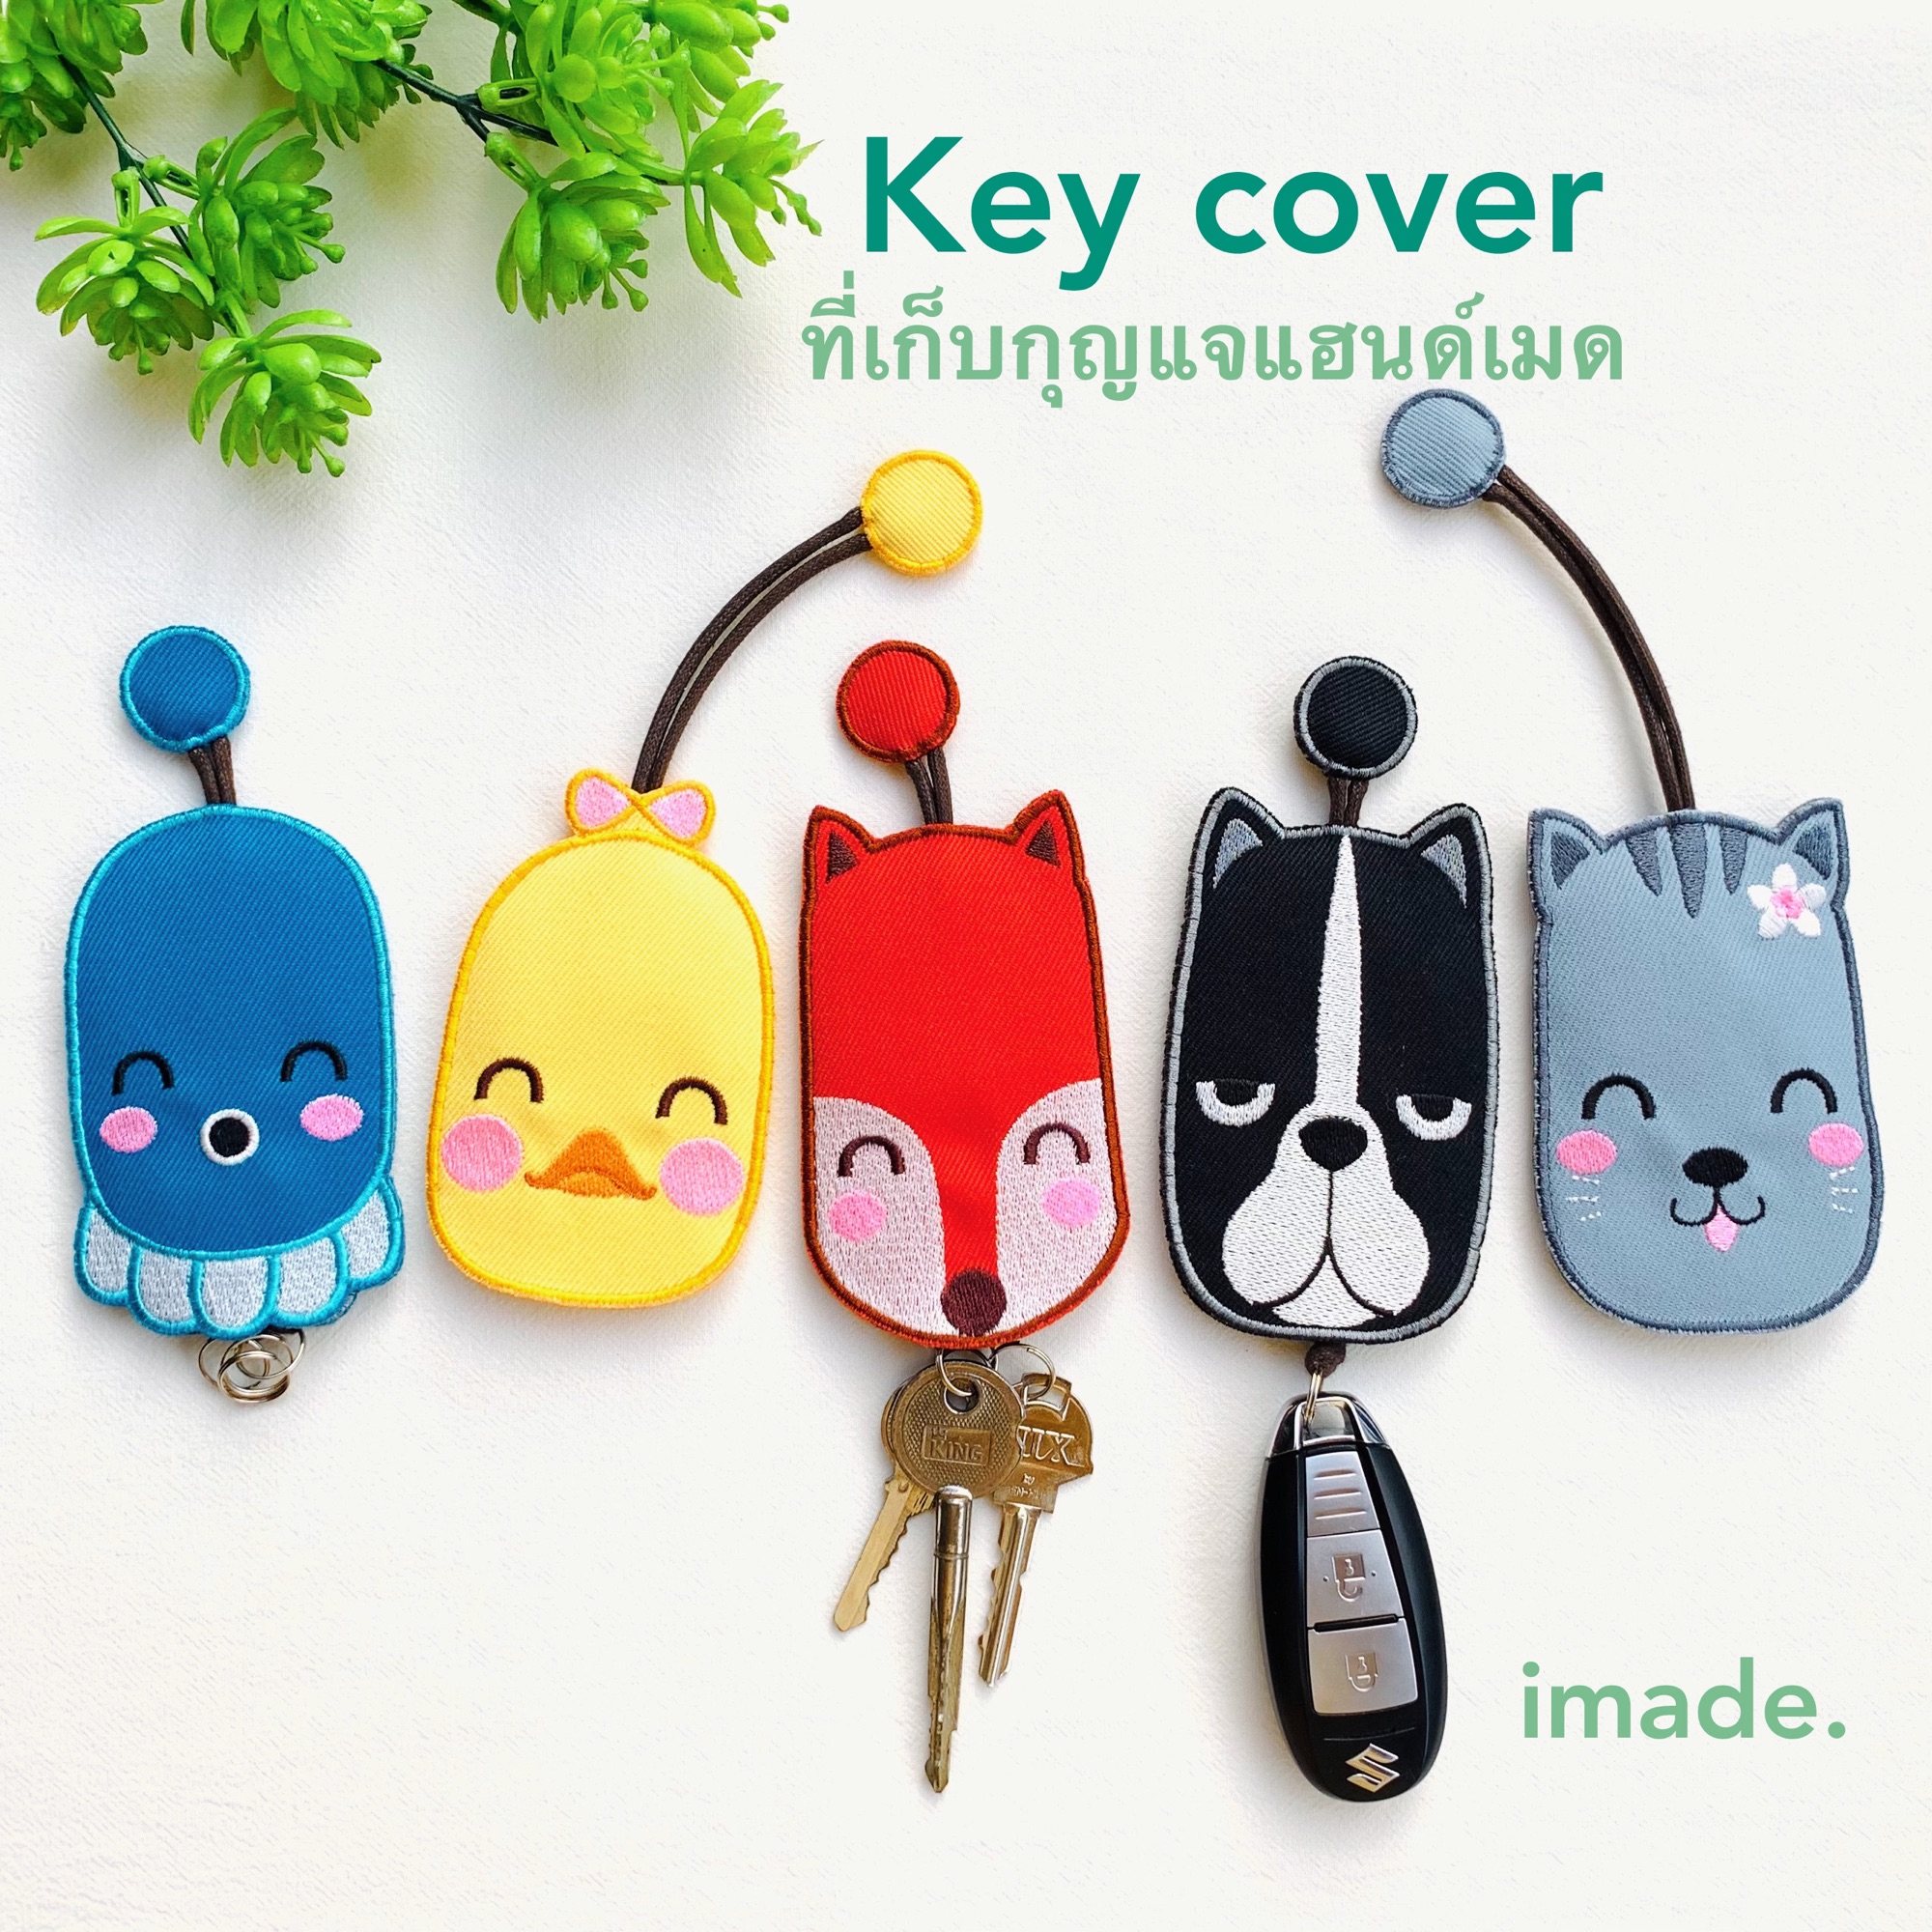 กระเป๋าใส่กุญแจ ที่เก็บกุญแจ รีโมทรถยนต์ งานปักผ้ายีนลายสัตว์น่ารัก Key cover